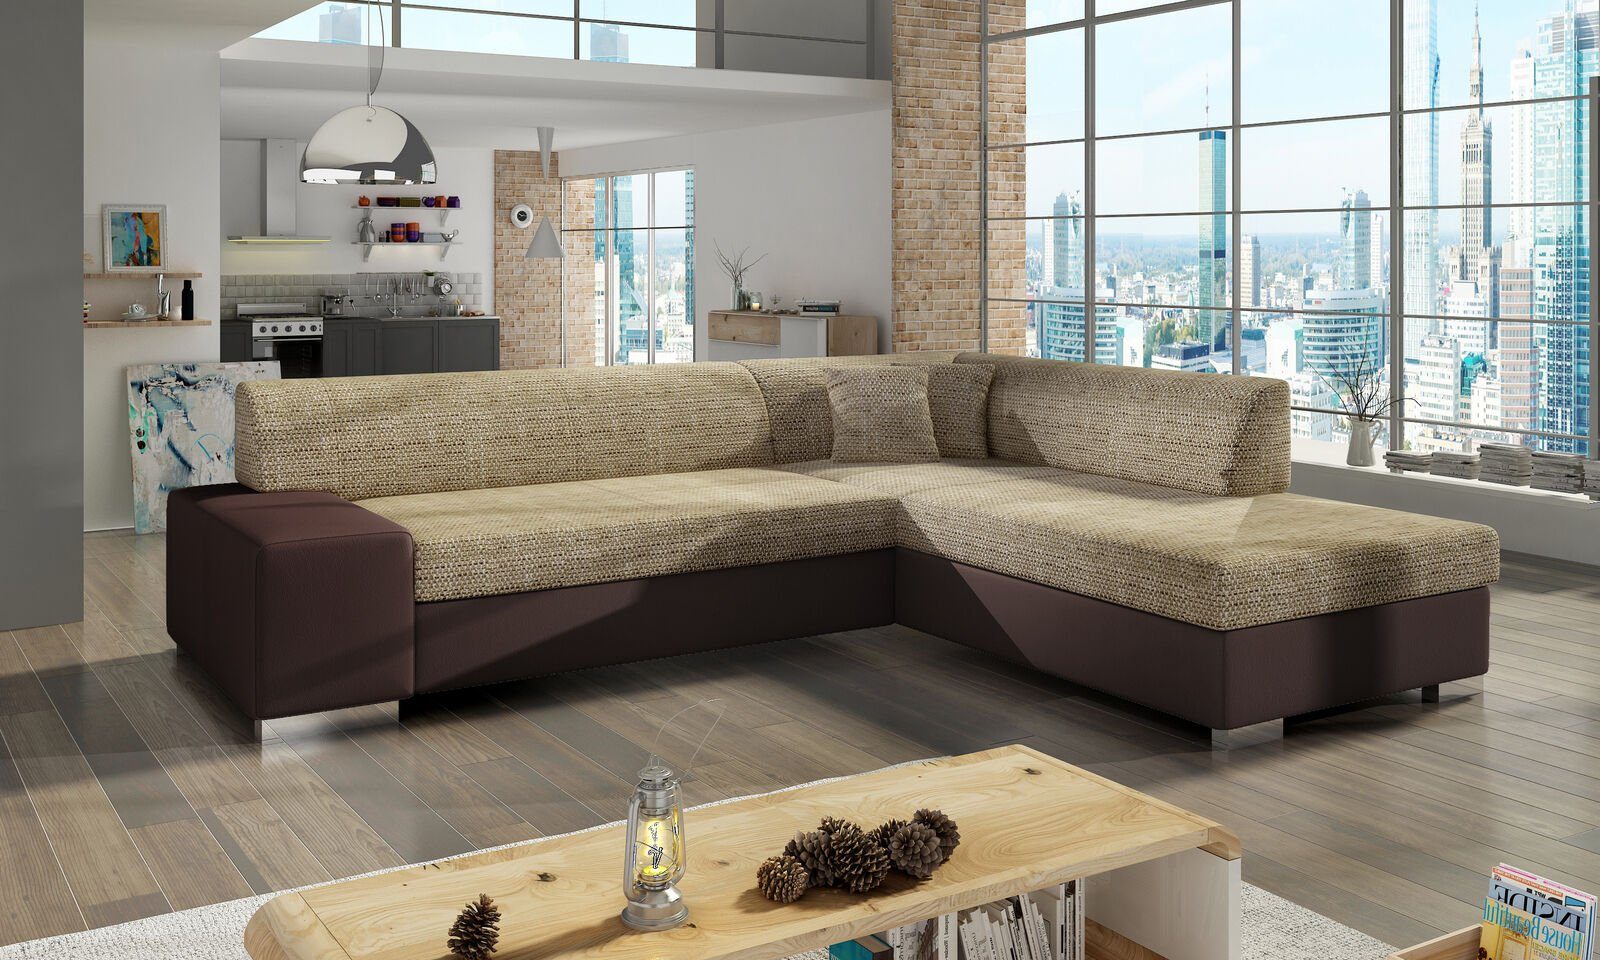 JVmoebel Ecksofa Design Ecksofa Schlafsofa Bettfunktion Couch Leder Textil Polster, Mit Bettfunktion Hellbraun / Dunkelbraun